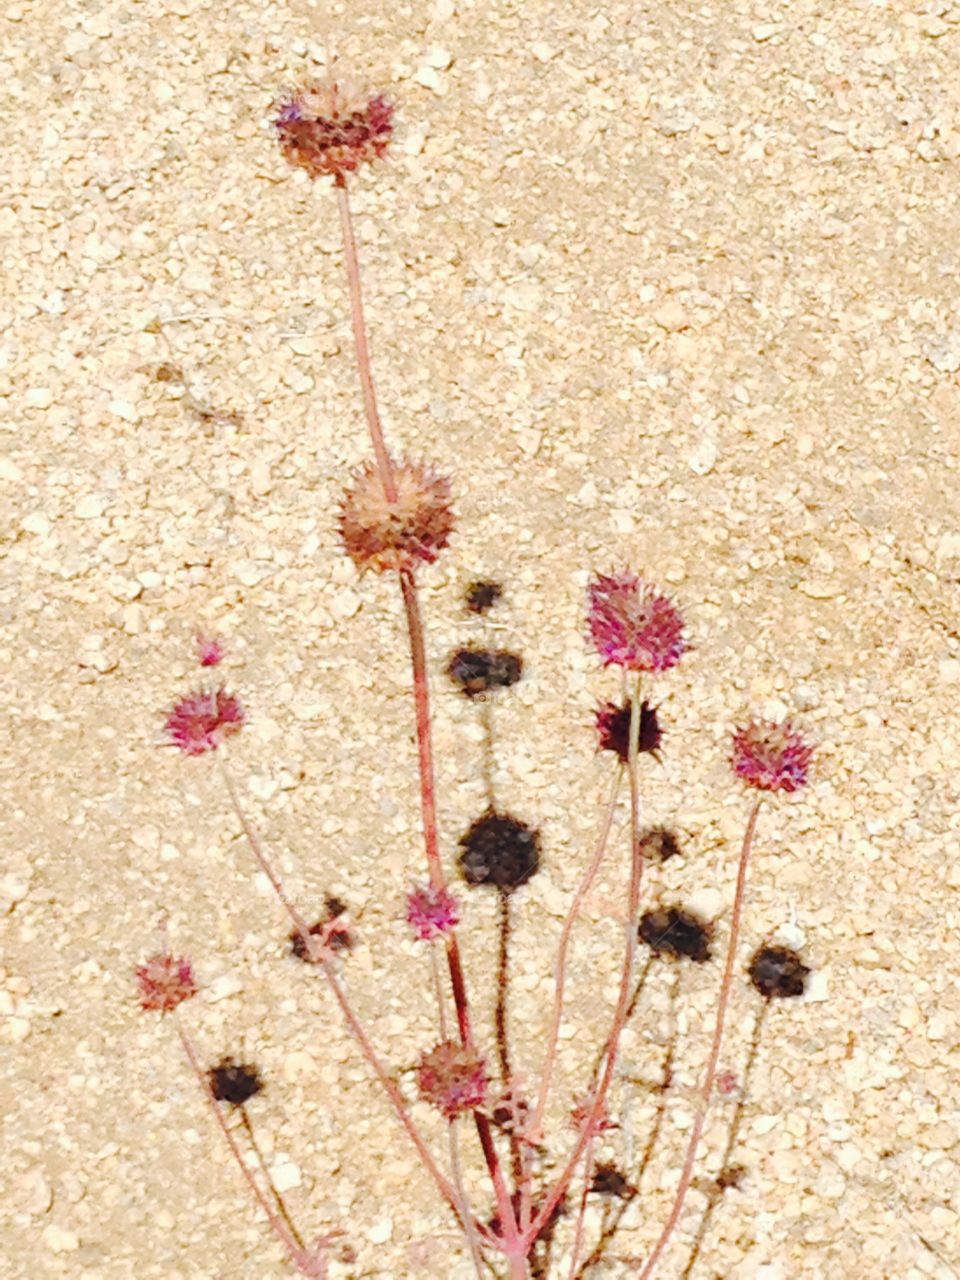 Desert plants popping